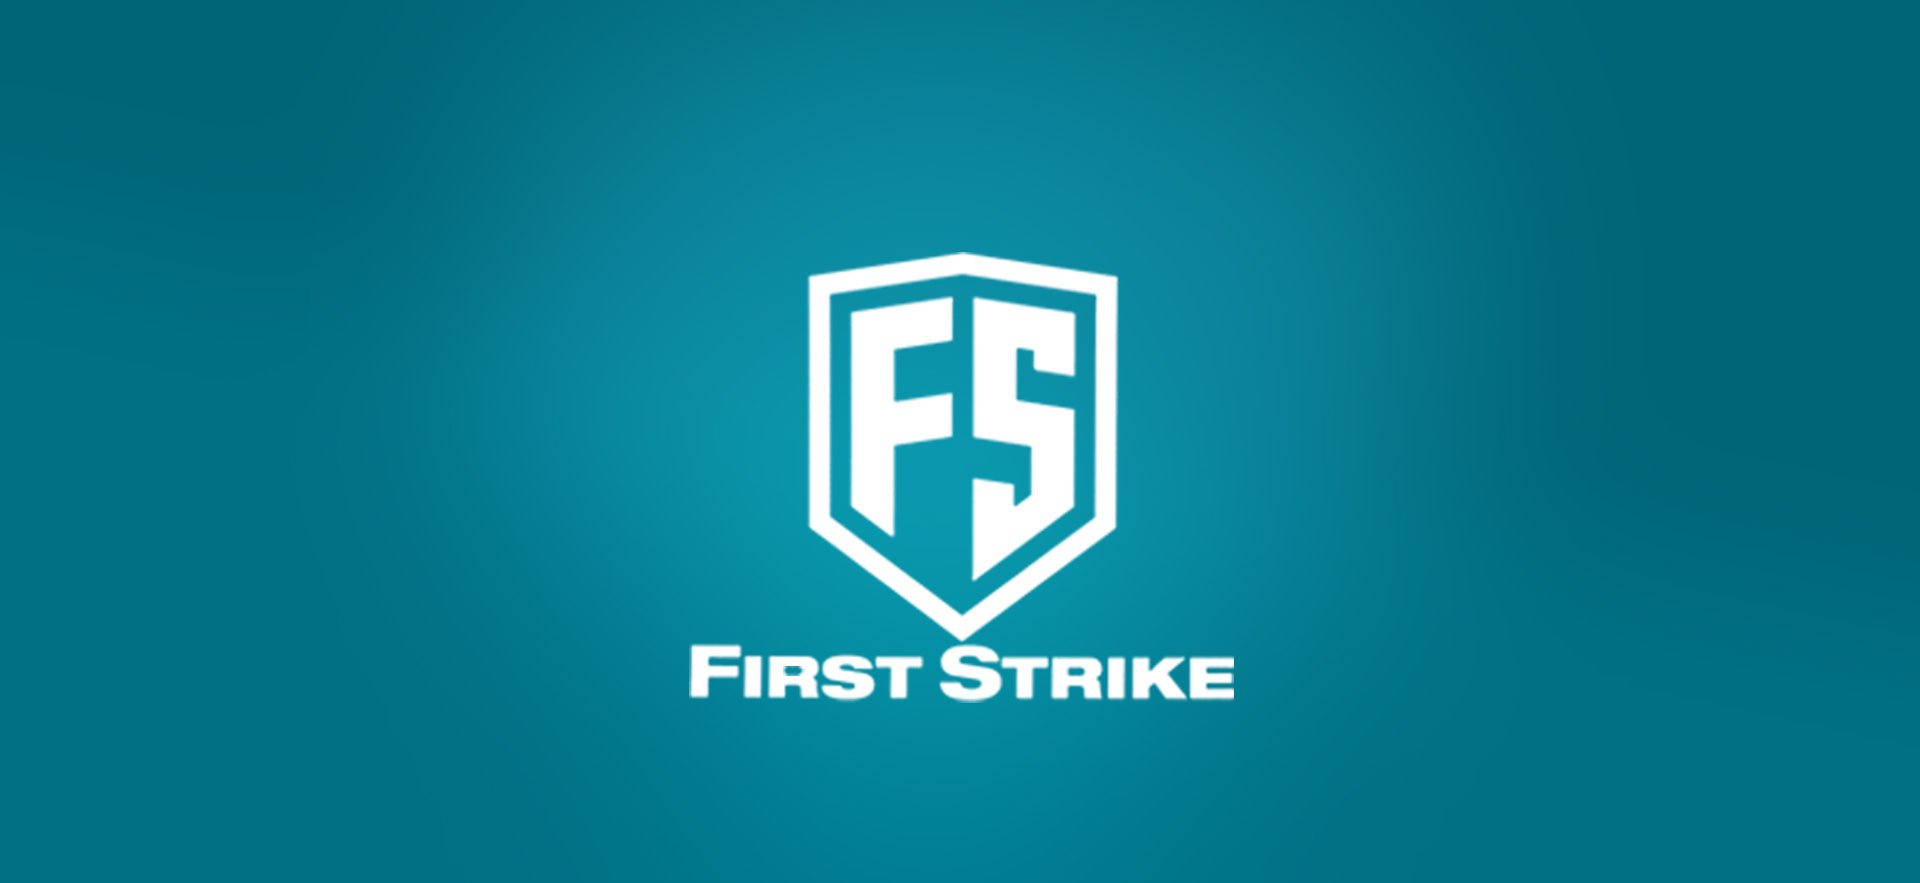 First Strike - Weekend-Warrior.Shop